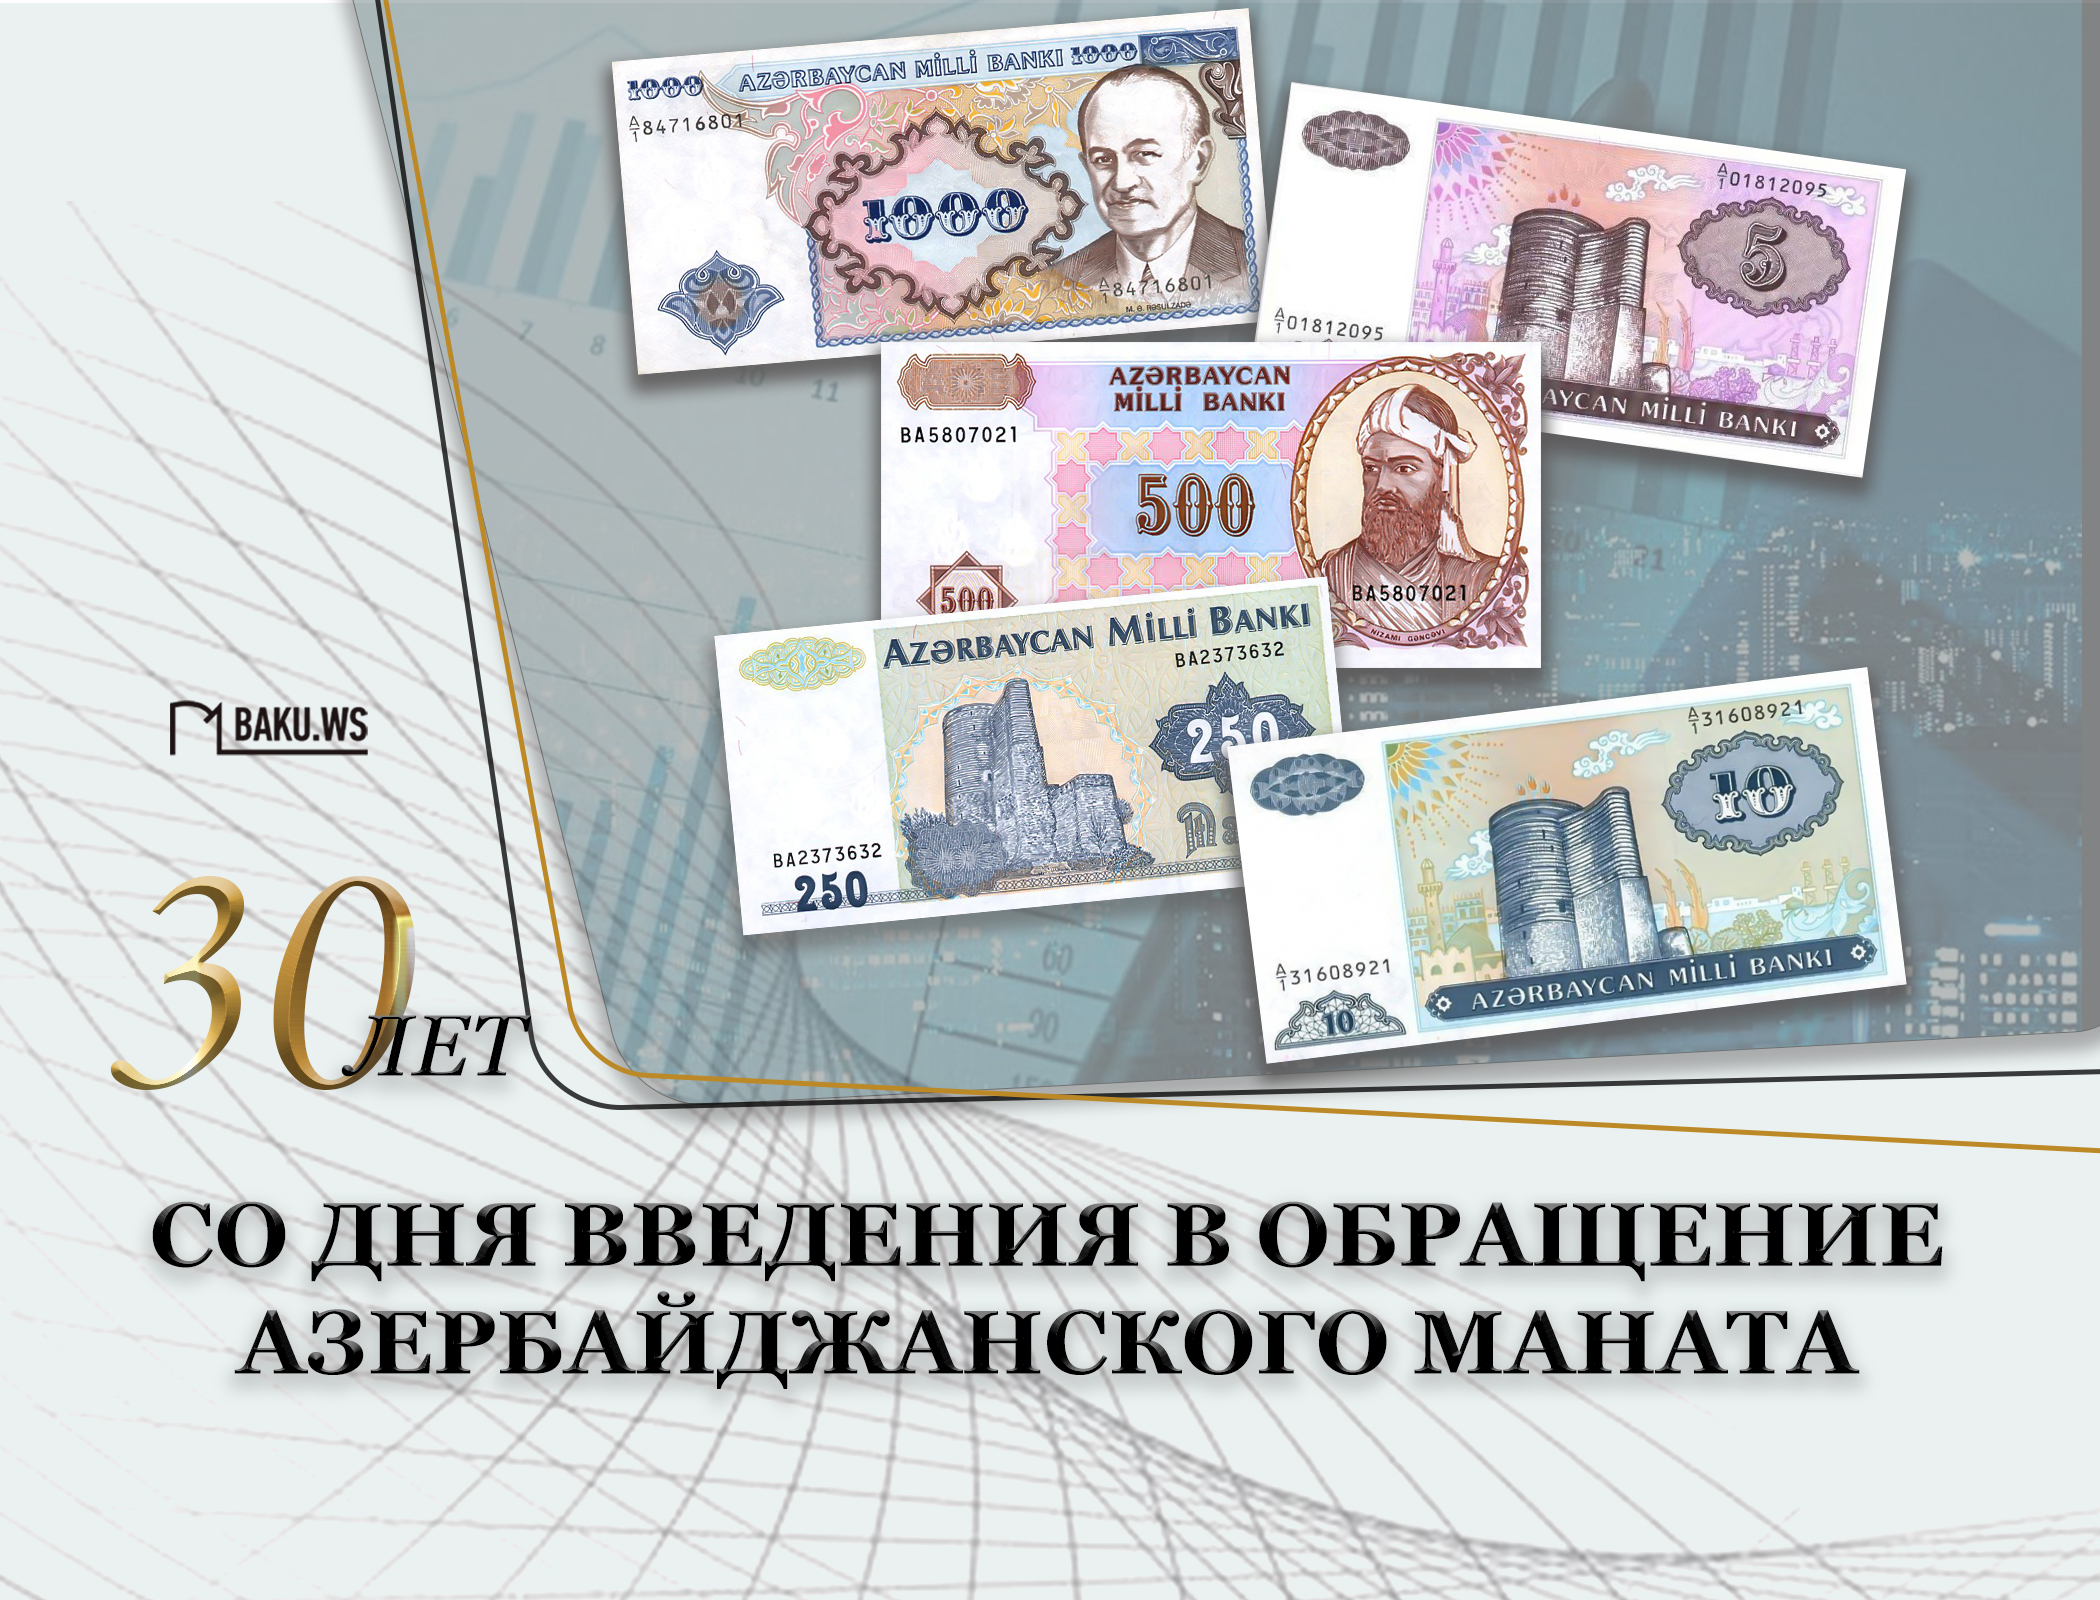 Со дня введения в обращение азербайджанского маната прошло 30 лет - ФОТО